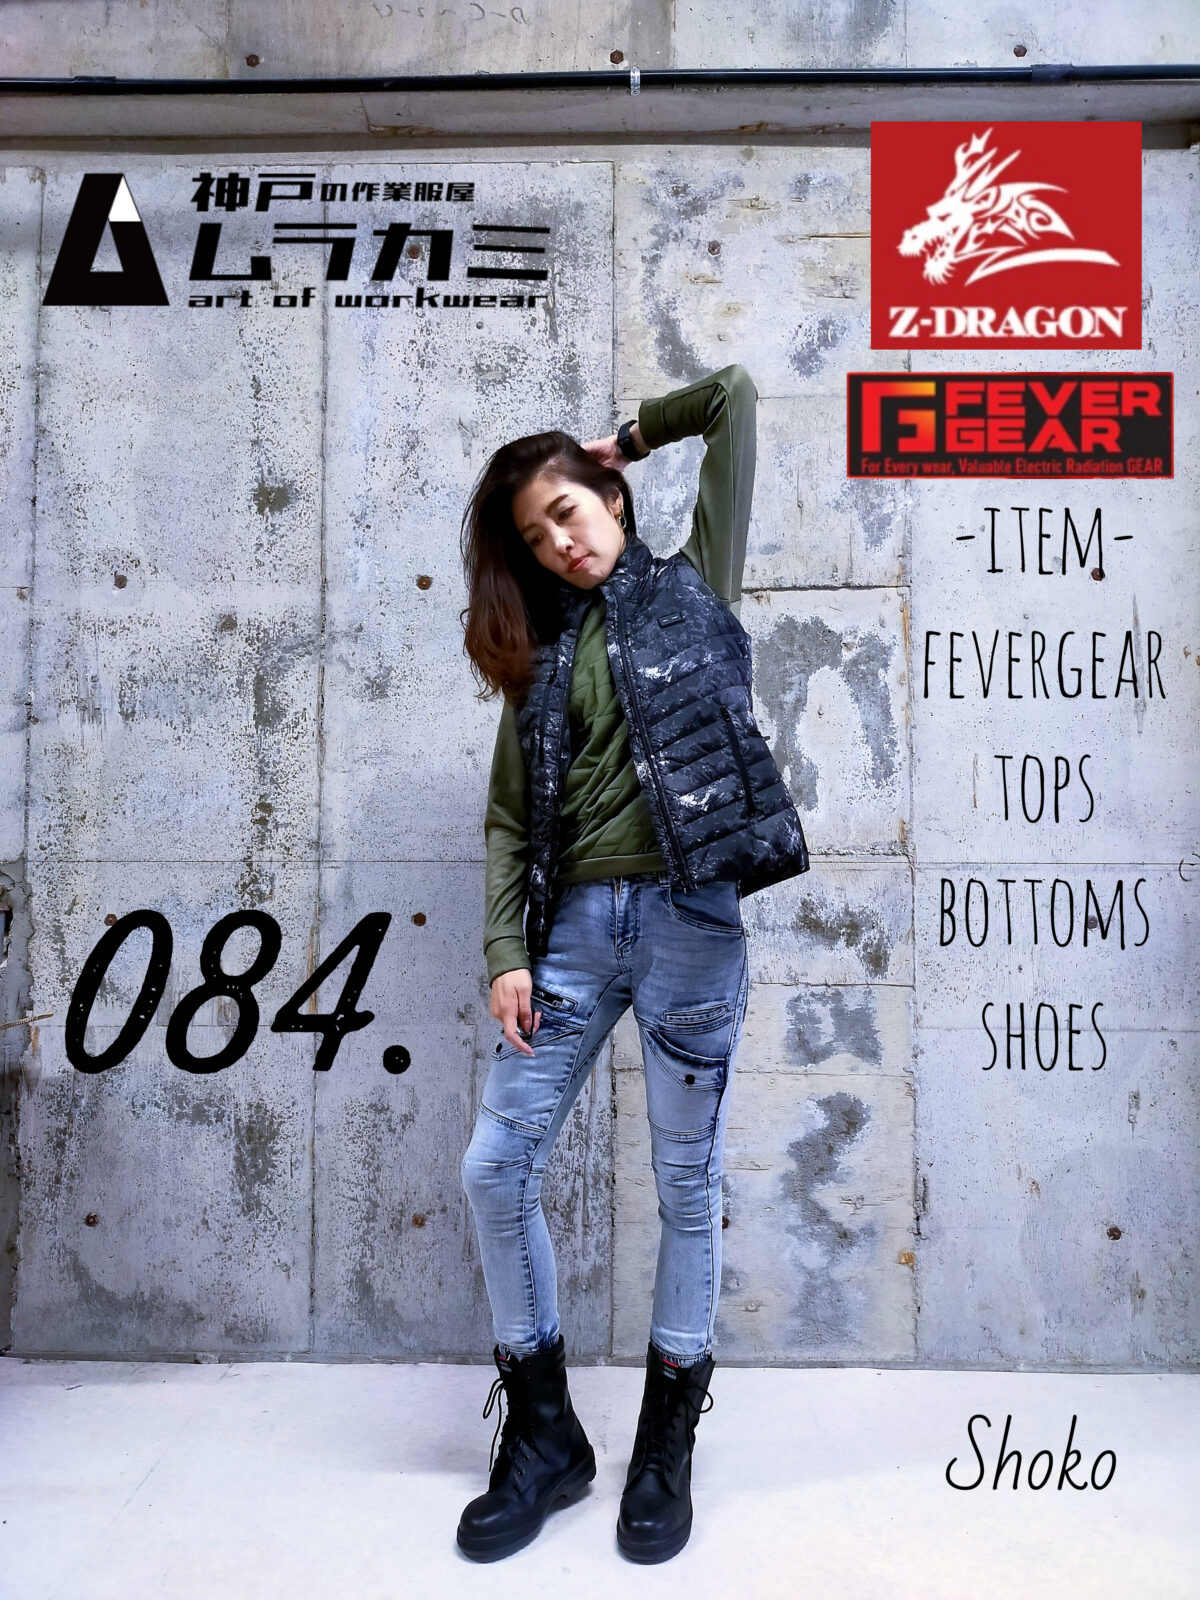 ■art of workwear スタイリングナンバー084. Z-DRAGON[ジードラゴン]さん特集　vol.2 with FEVERGEAR